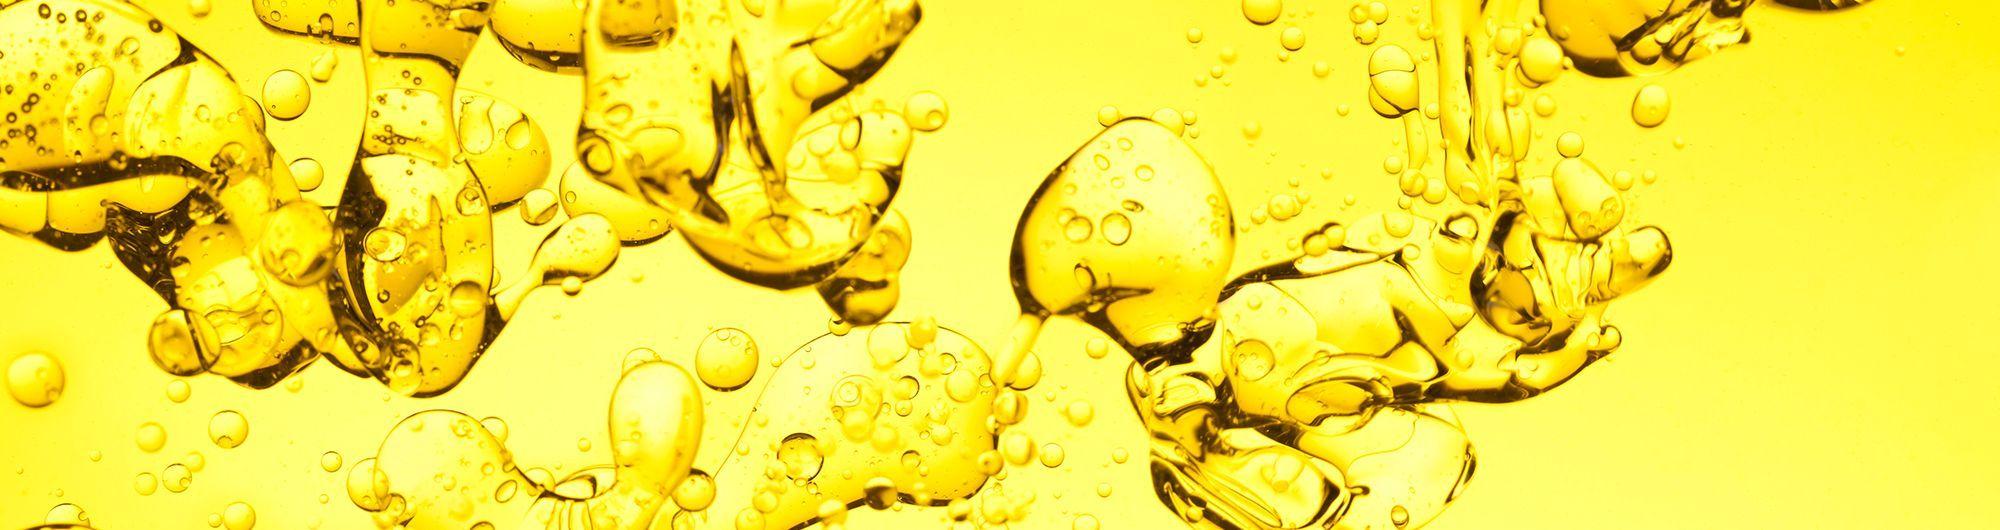 liquido amarelo com bolhas 